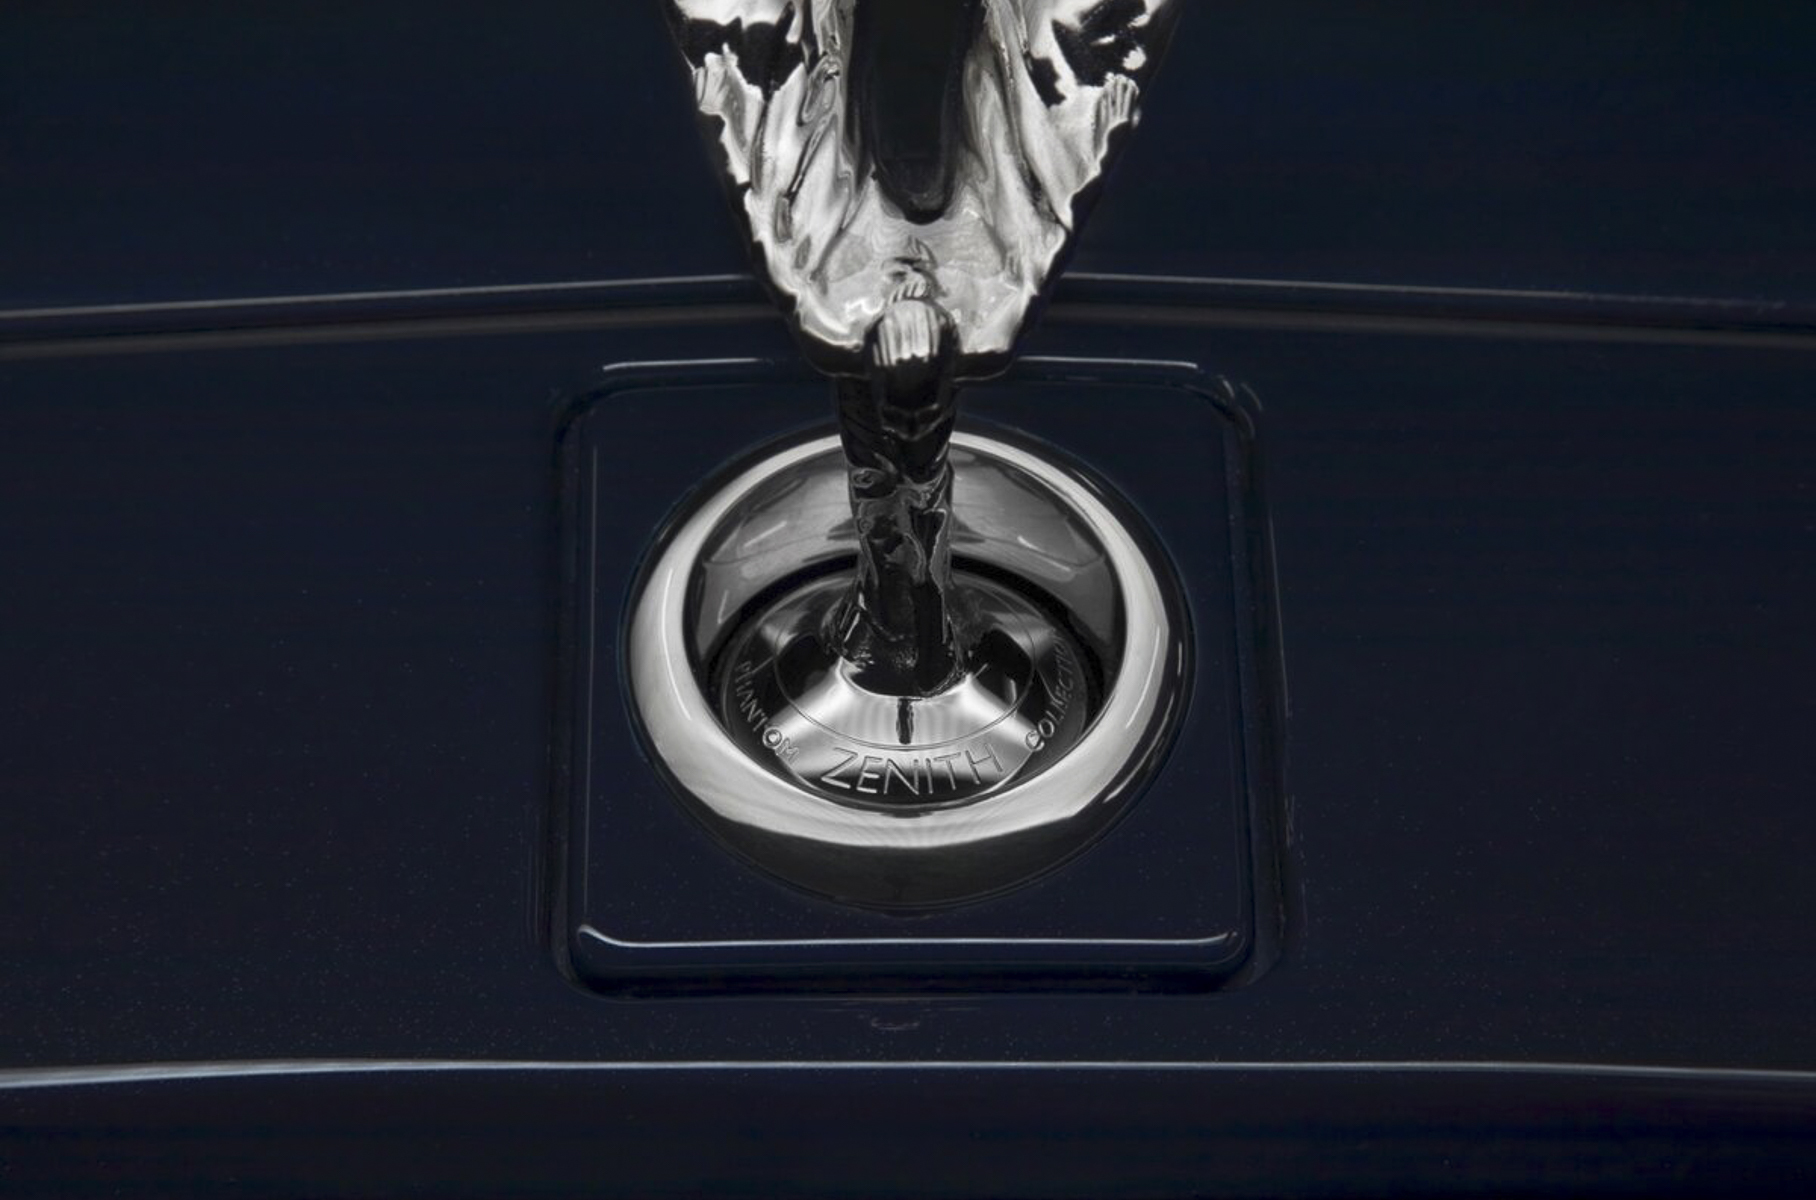 Редчайший Rolls-Royce Phantom, за которым гоняются коллекционеры, продают в Москве